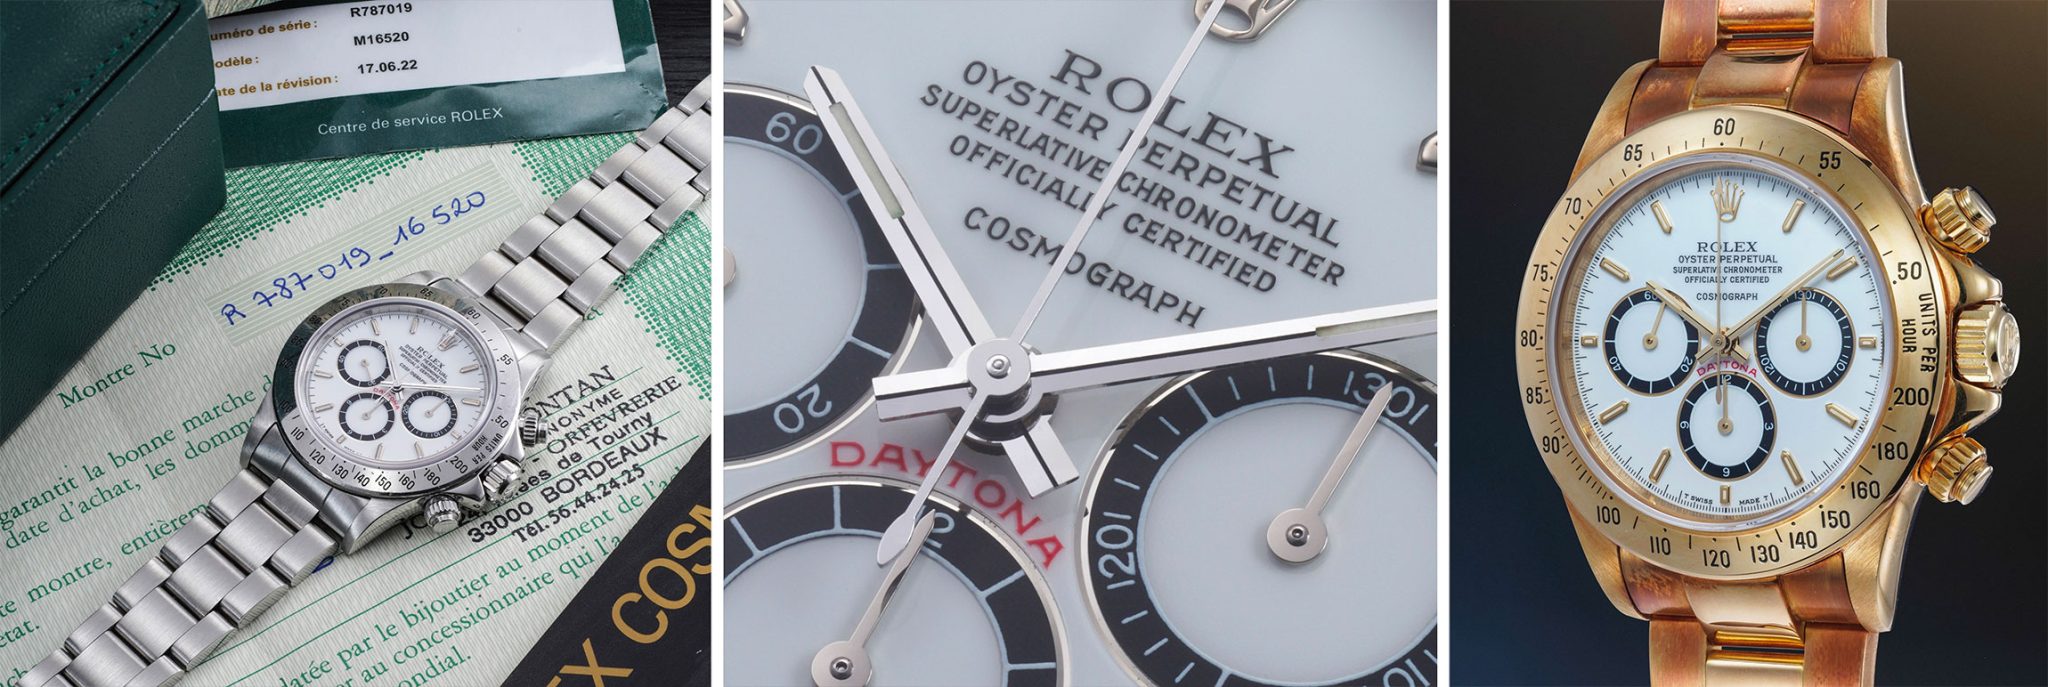 Phillips-Geneva-Watch-Auktion-XVII-Highlights-Rolex-Daytona-Los-116-und-Los-118